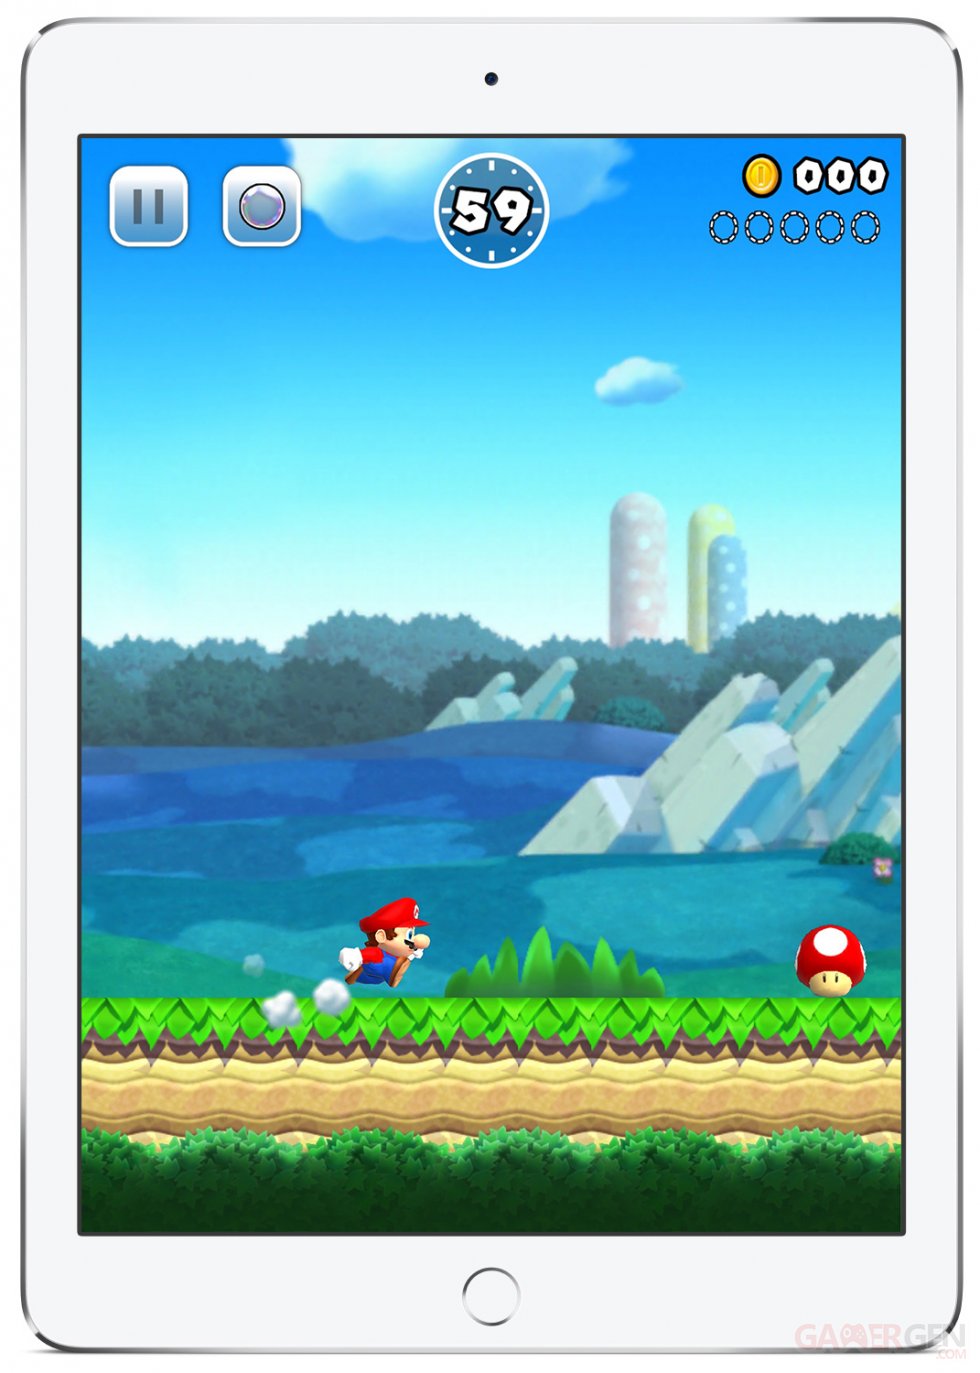 Super Mario Run images (1)